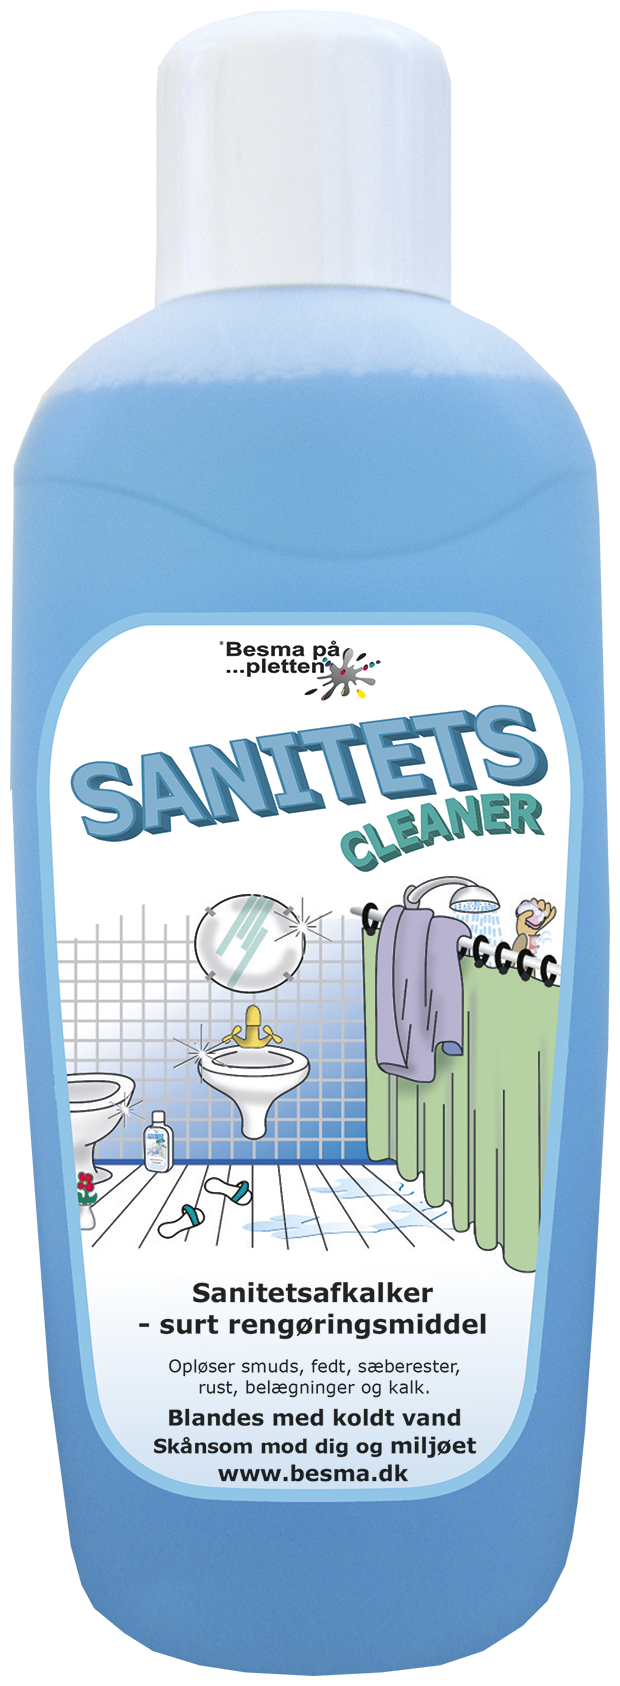 Se Sanitets Cleaner afkalker, 1 liter hos Specialbutikken